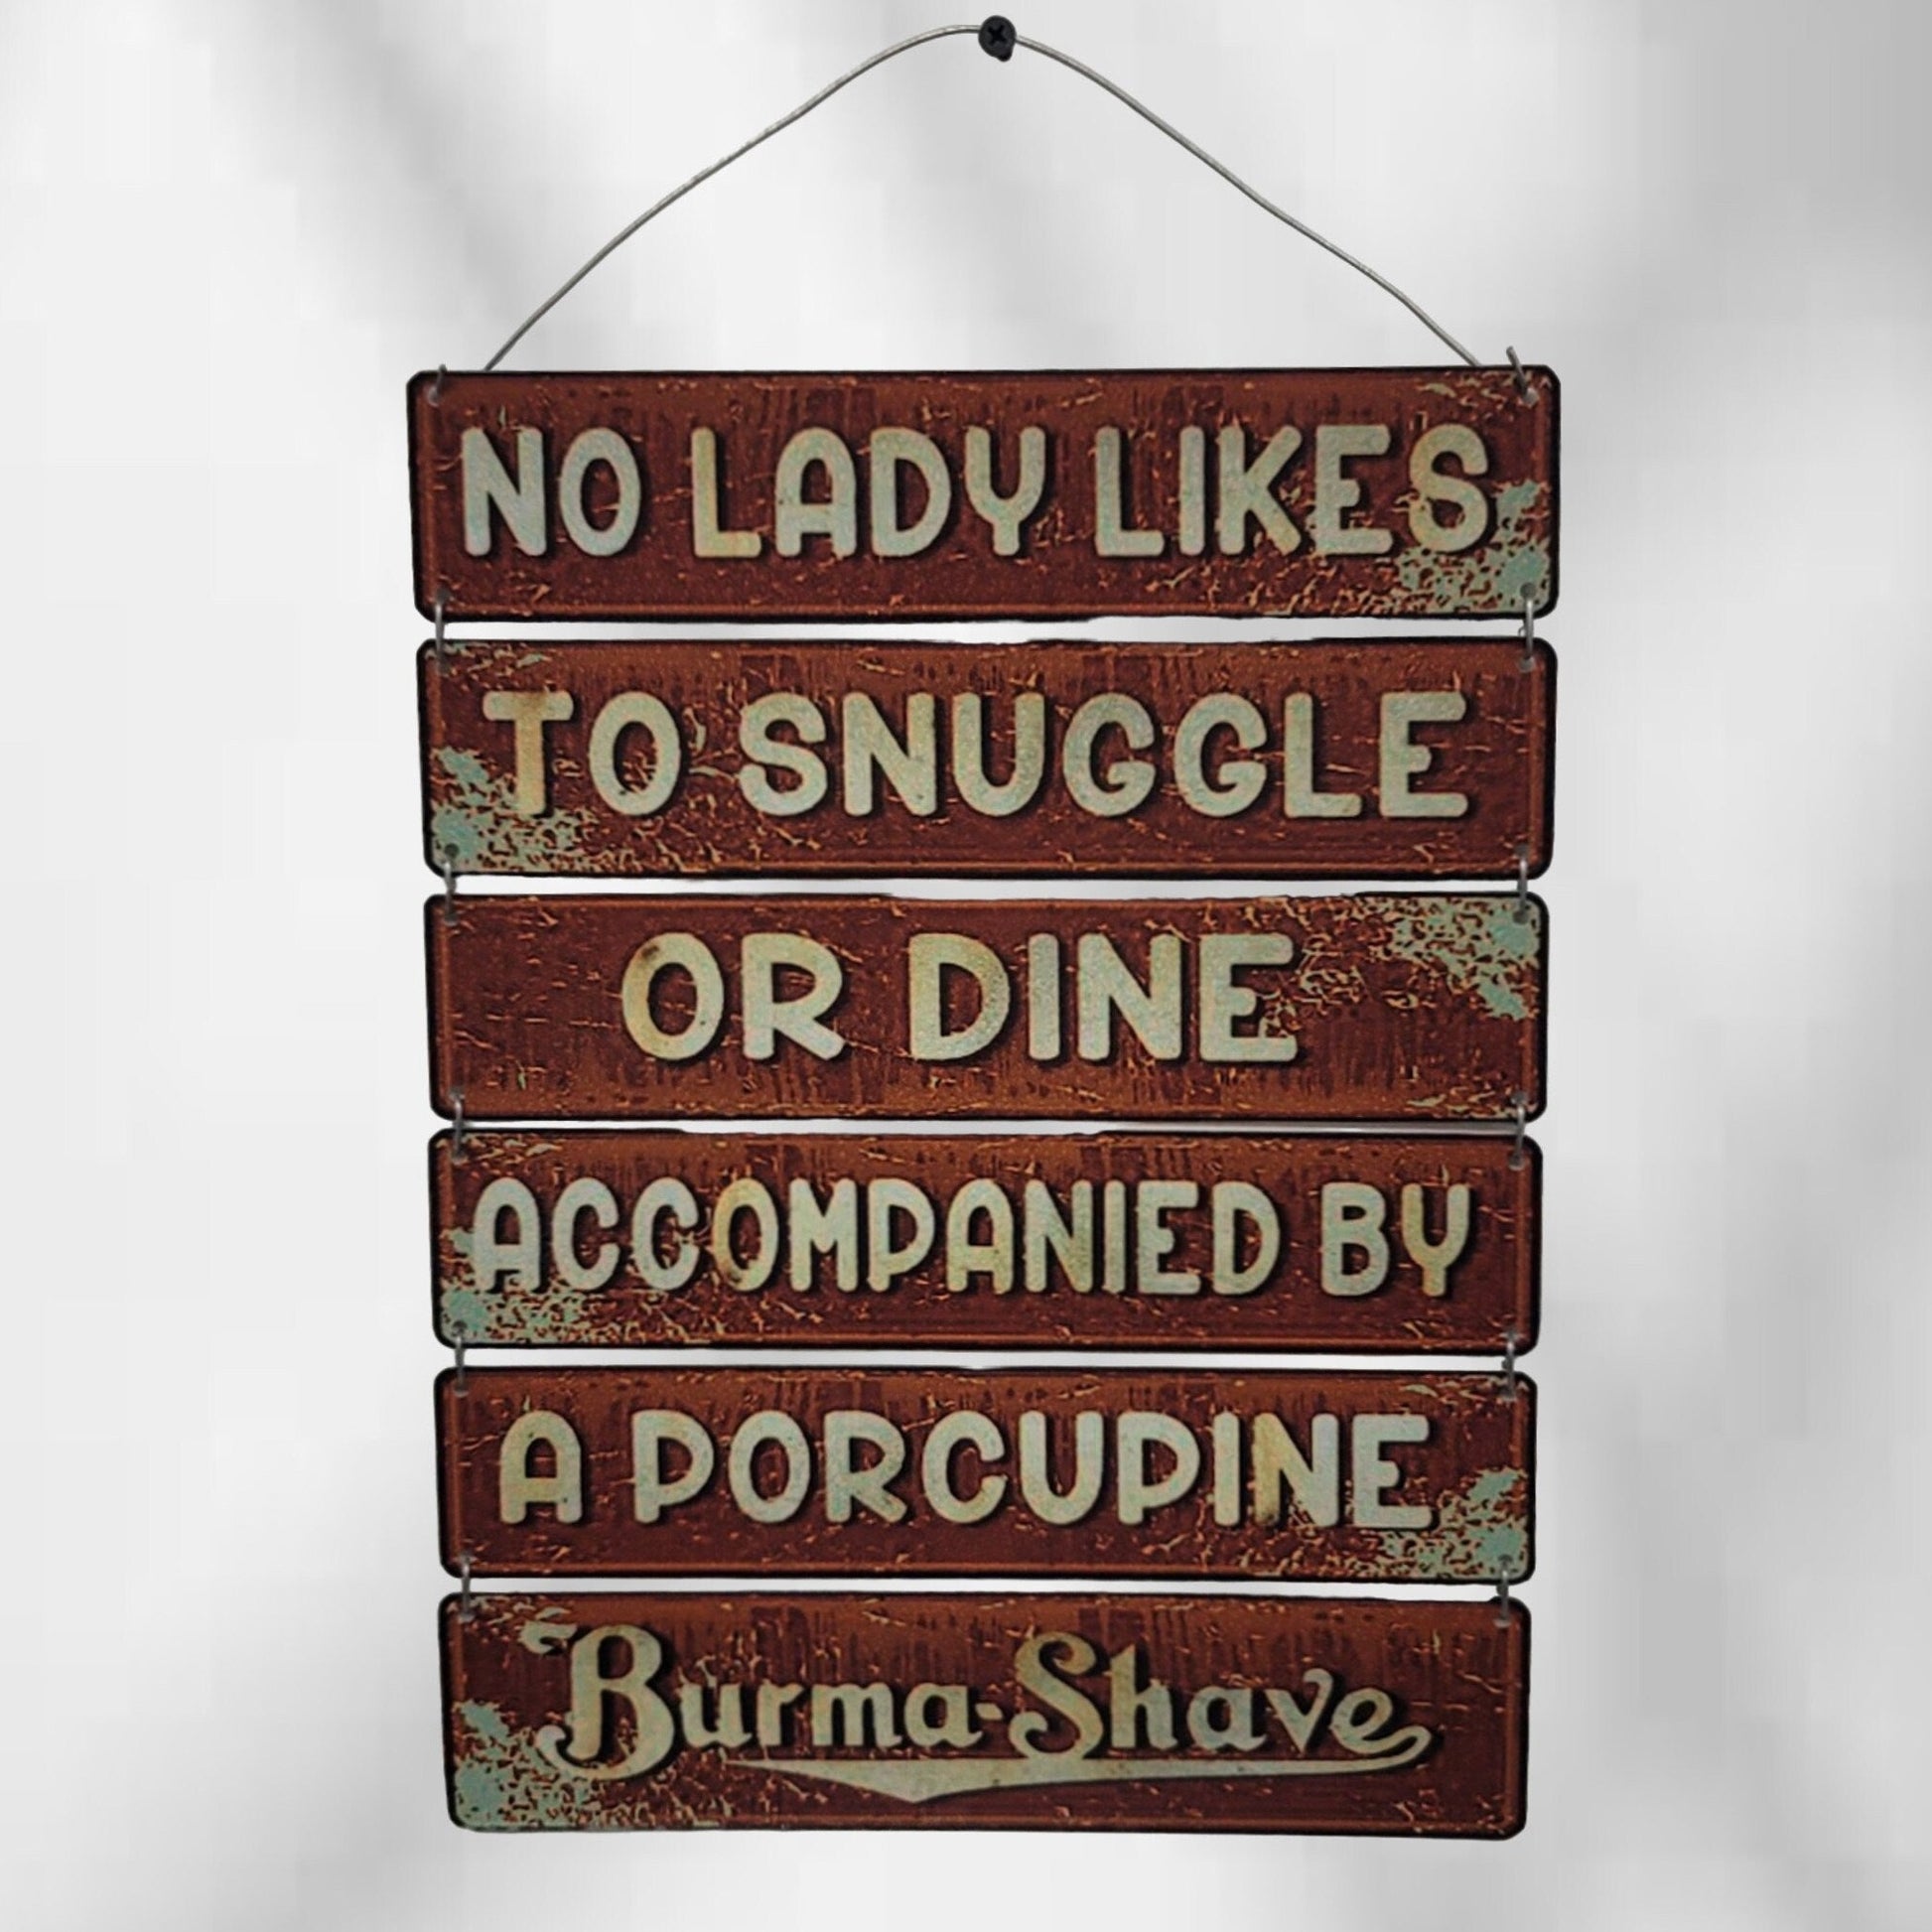 burma shave barber sign vintage advertizing shaving sign